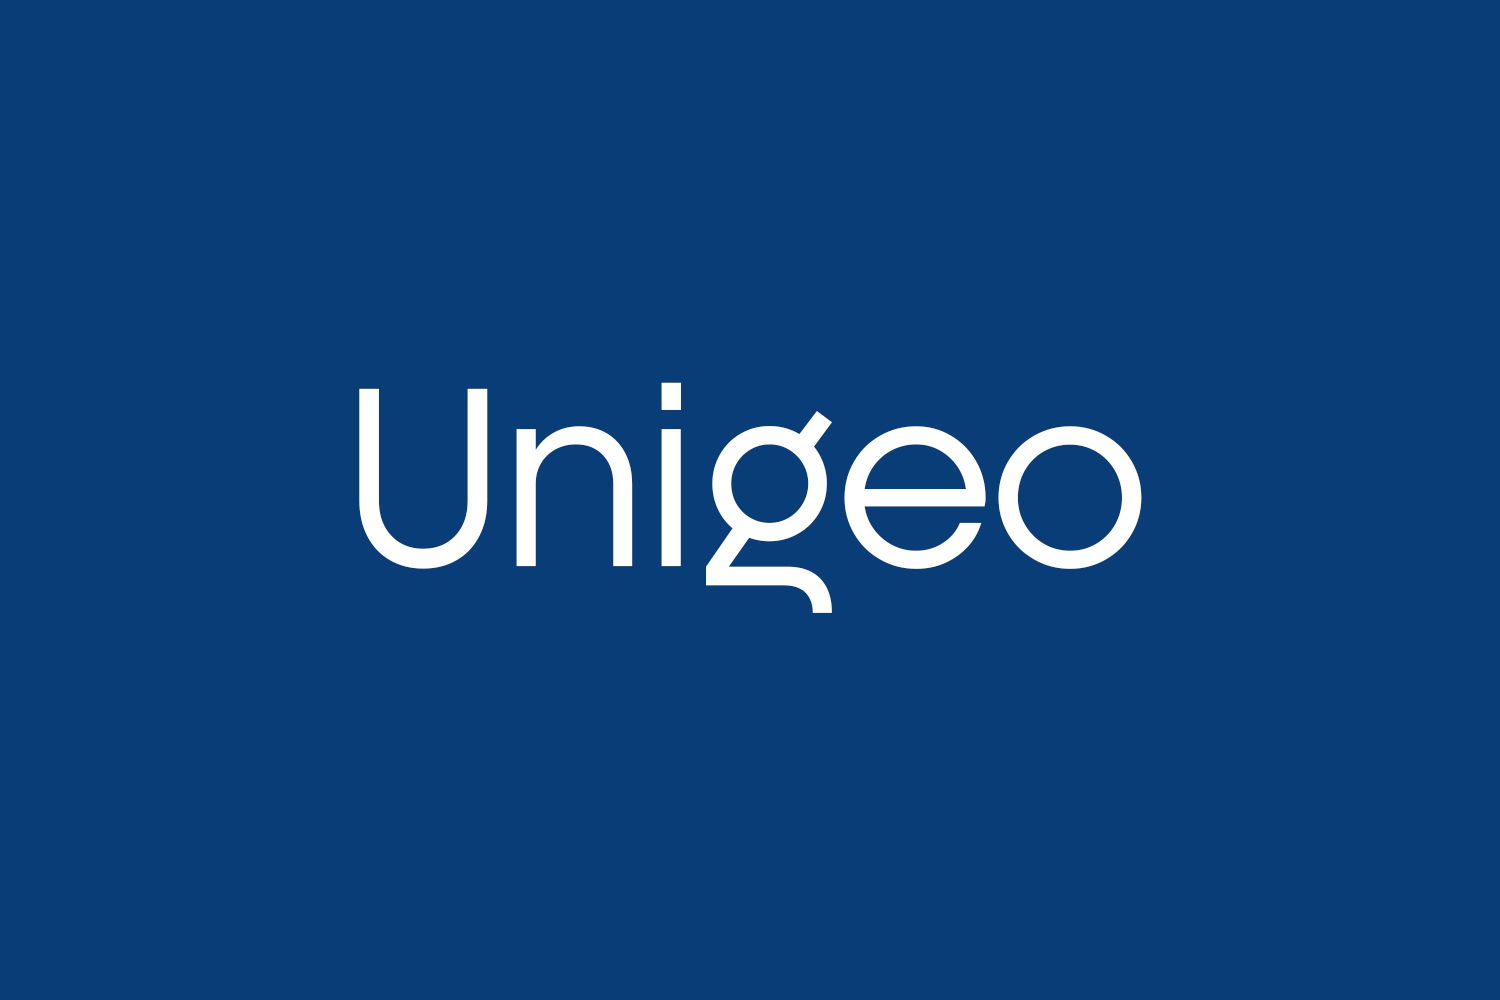 Unigeo Free Font